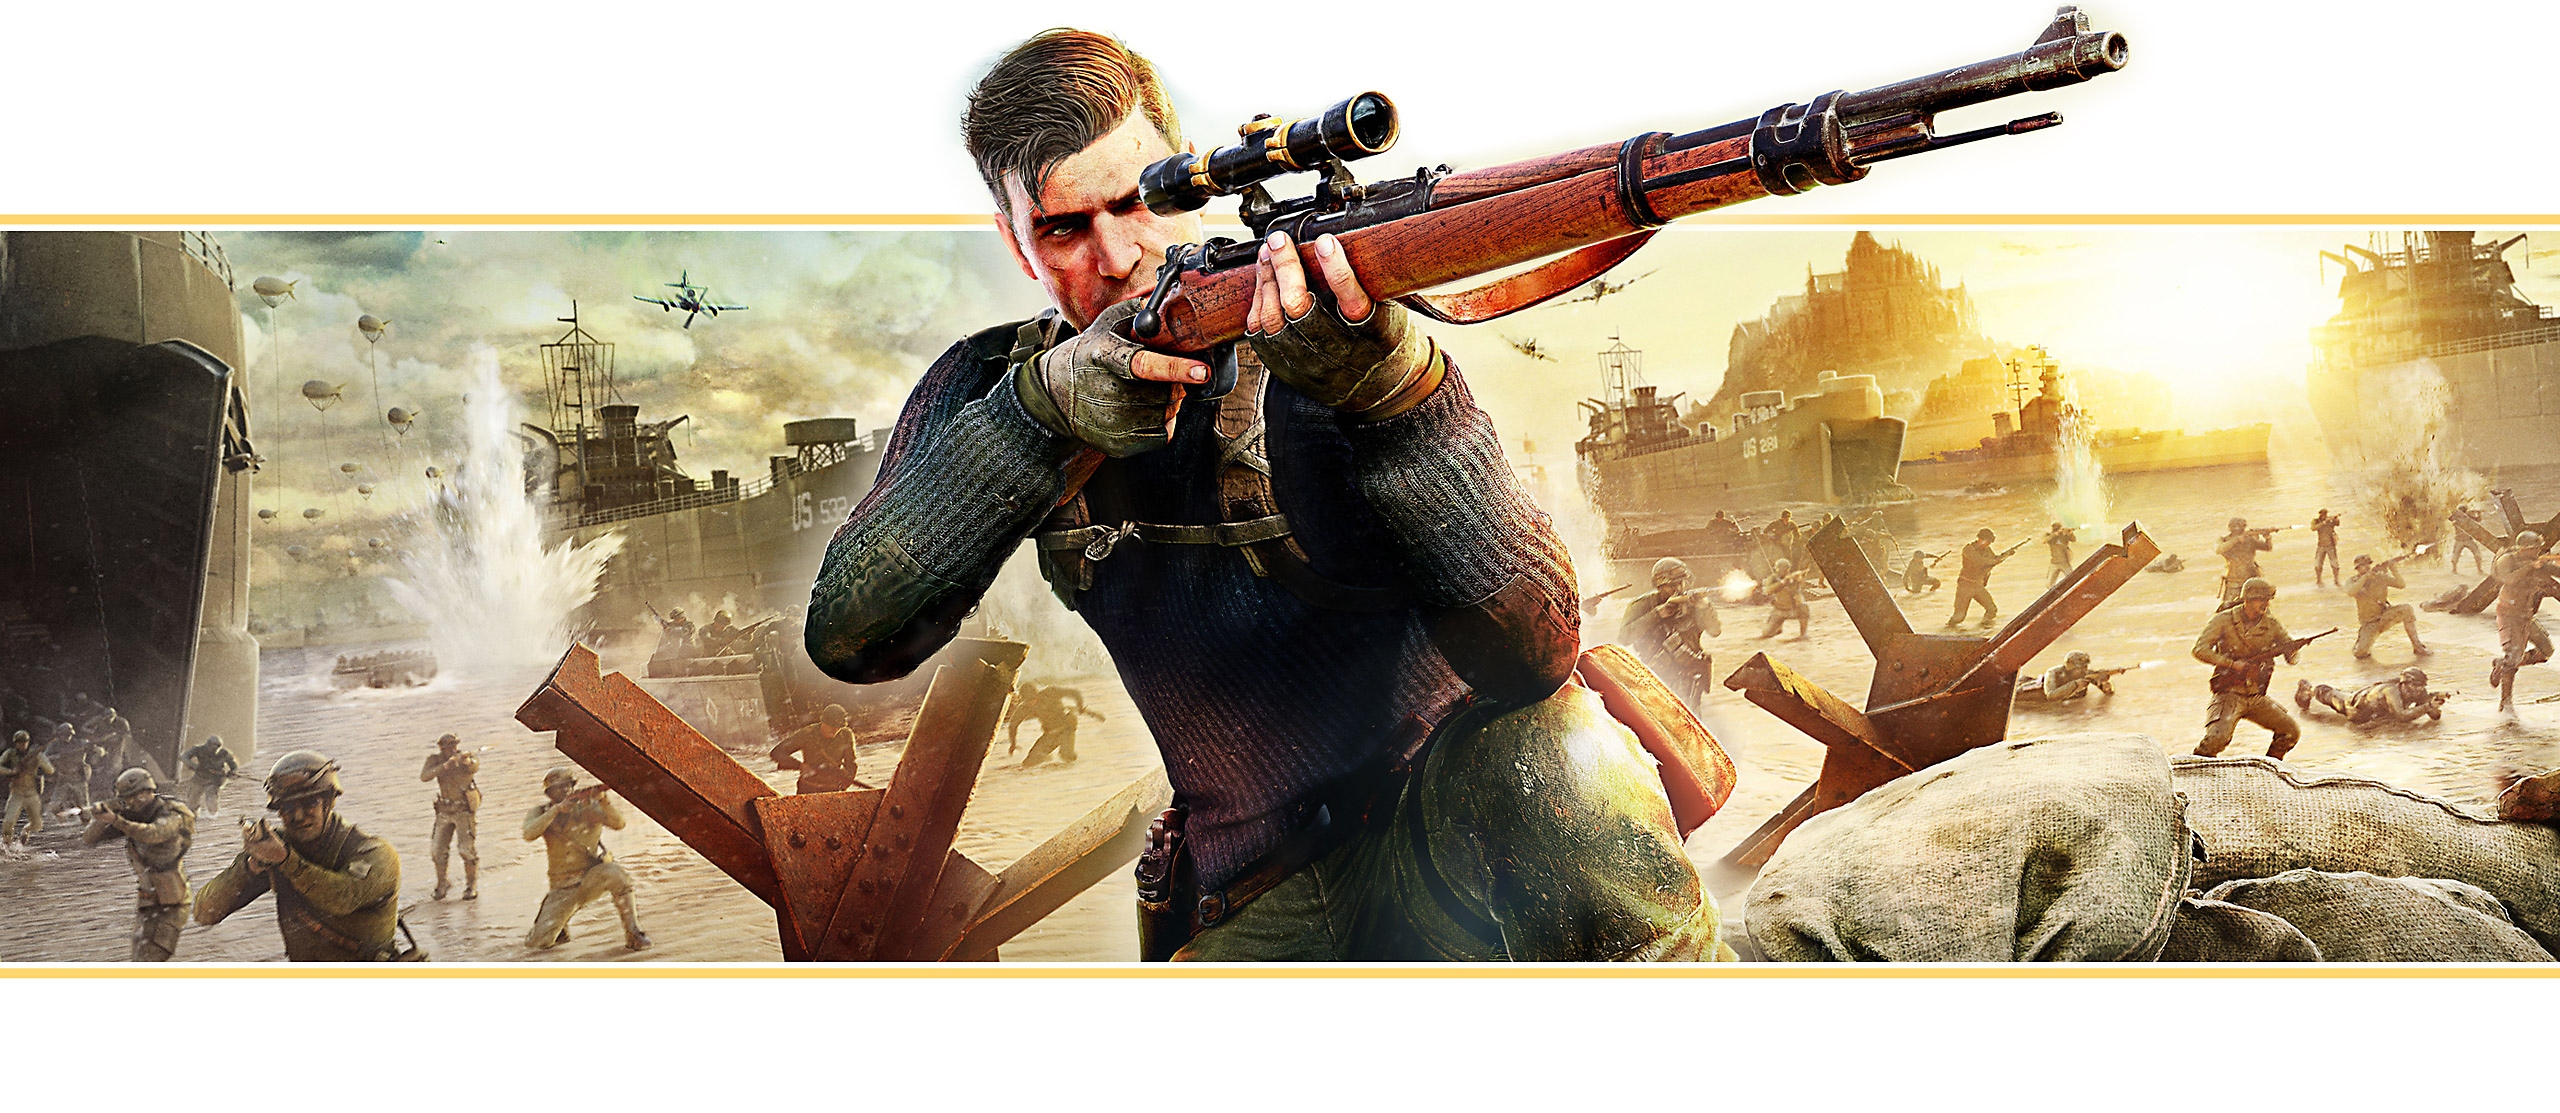 Bannière de fonctionnalité de Sniper Elite 5 basée sur l'art clé du jeu; le personnage principal visant avec un fusil de précision